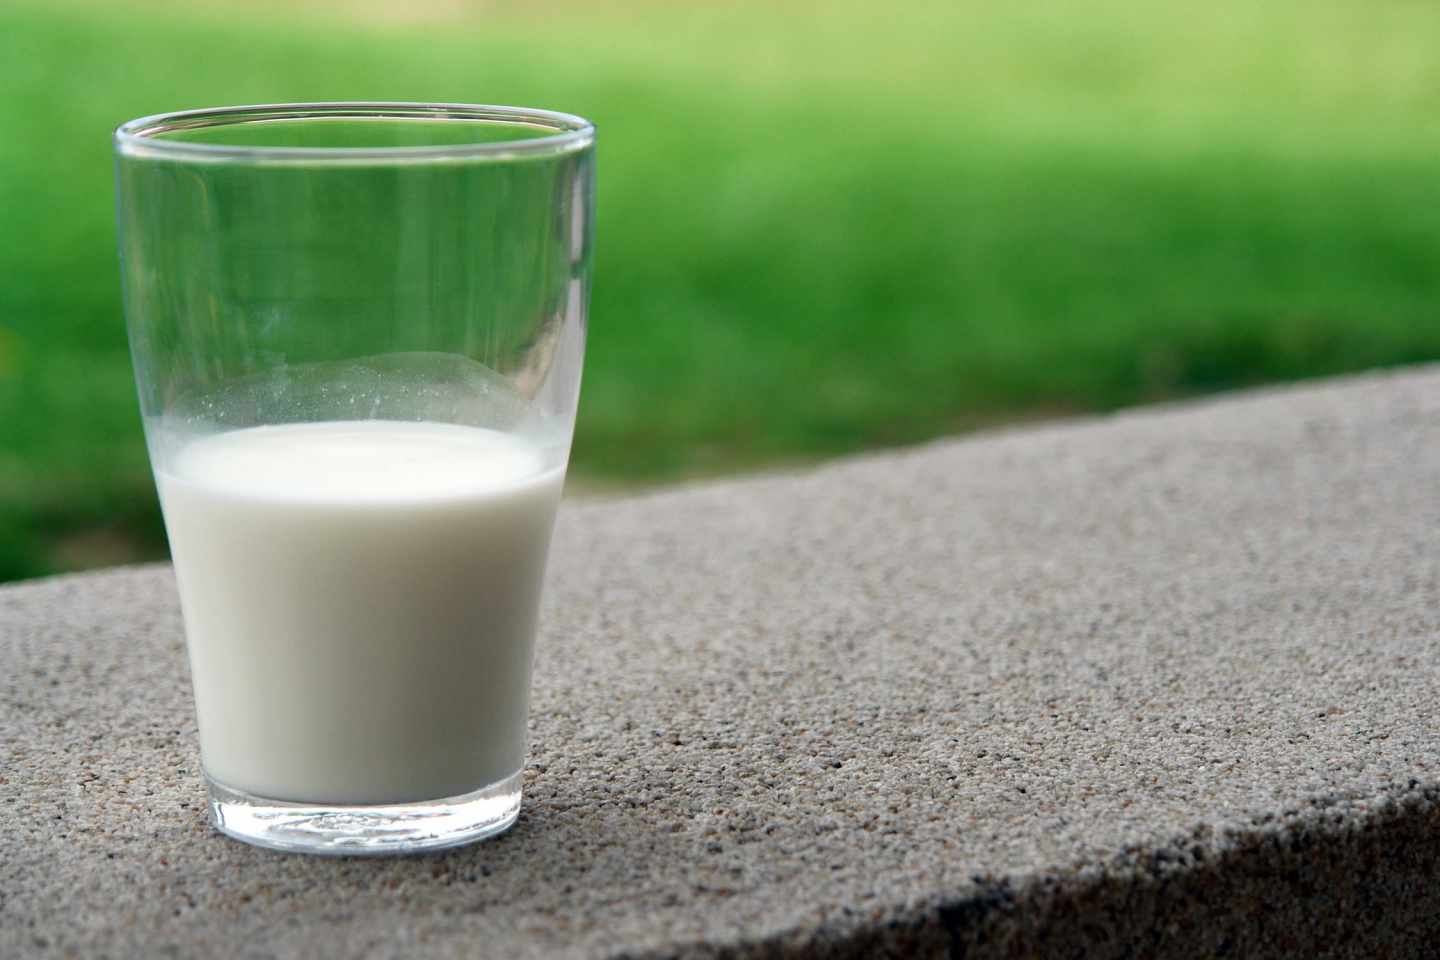 La OCU alerta del riesgo sanitario elevado que entraña consumir leche cruda.